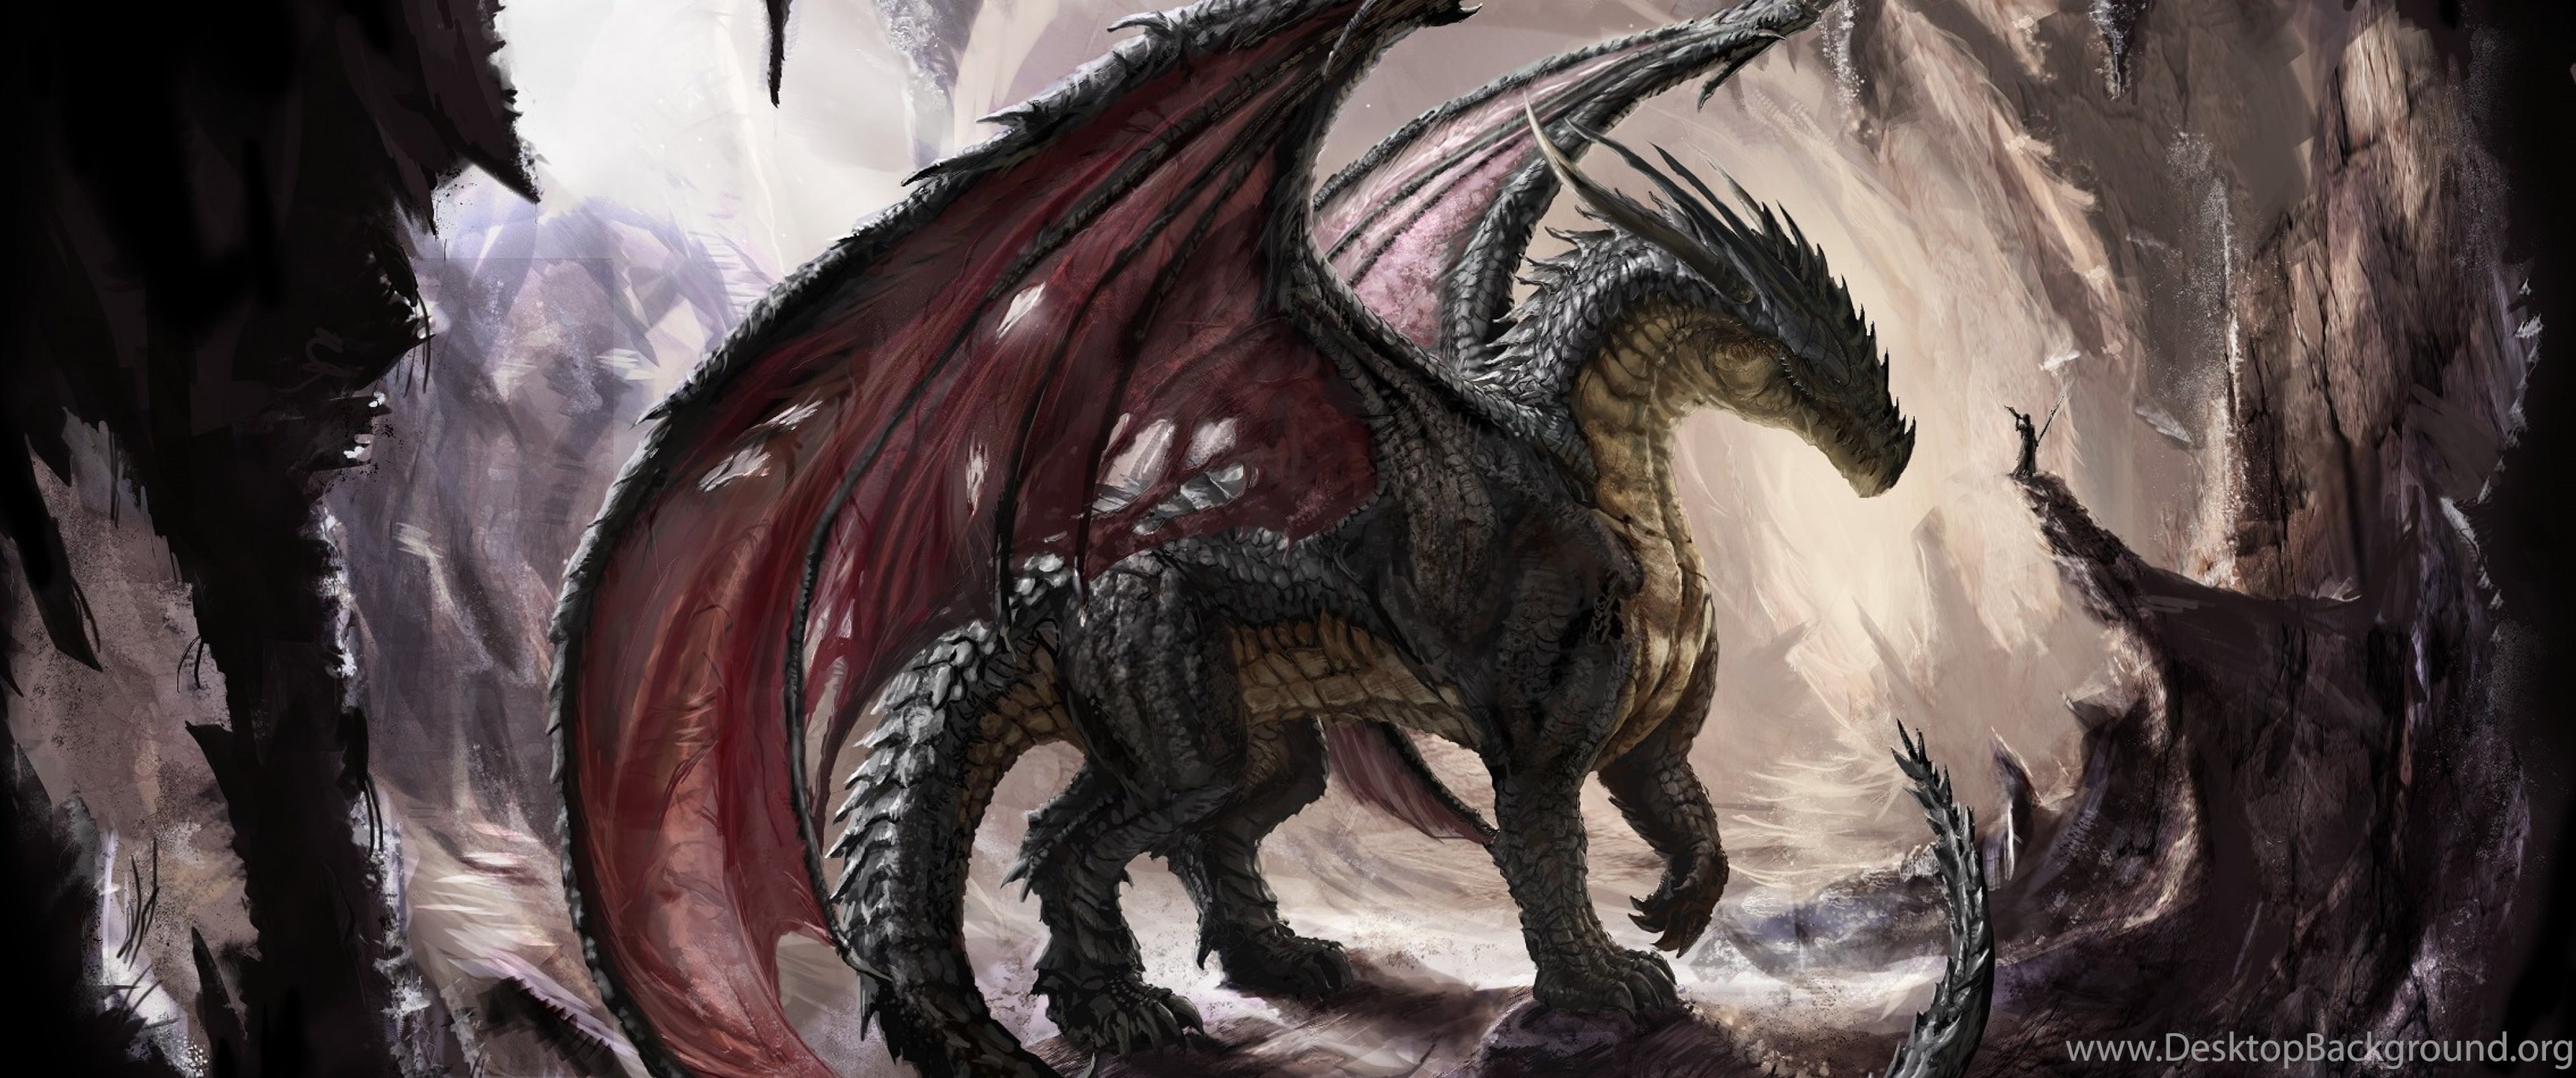 dragones fond d'écran hd,dragon,personnage fictif,créature mythique,oeuvre de cg,mythologie